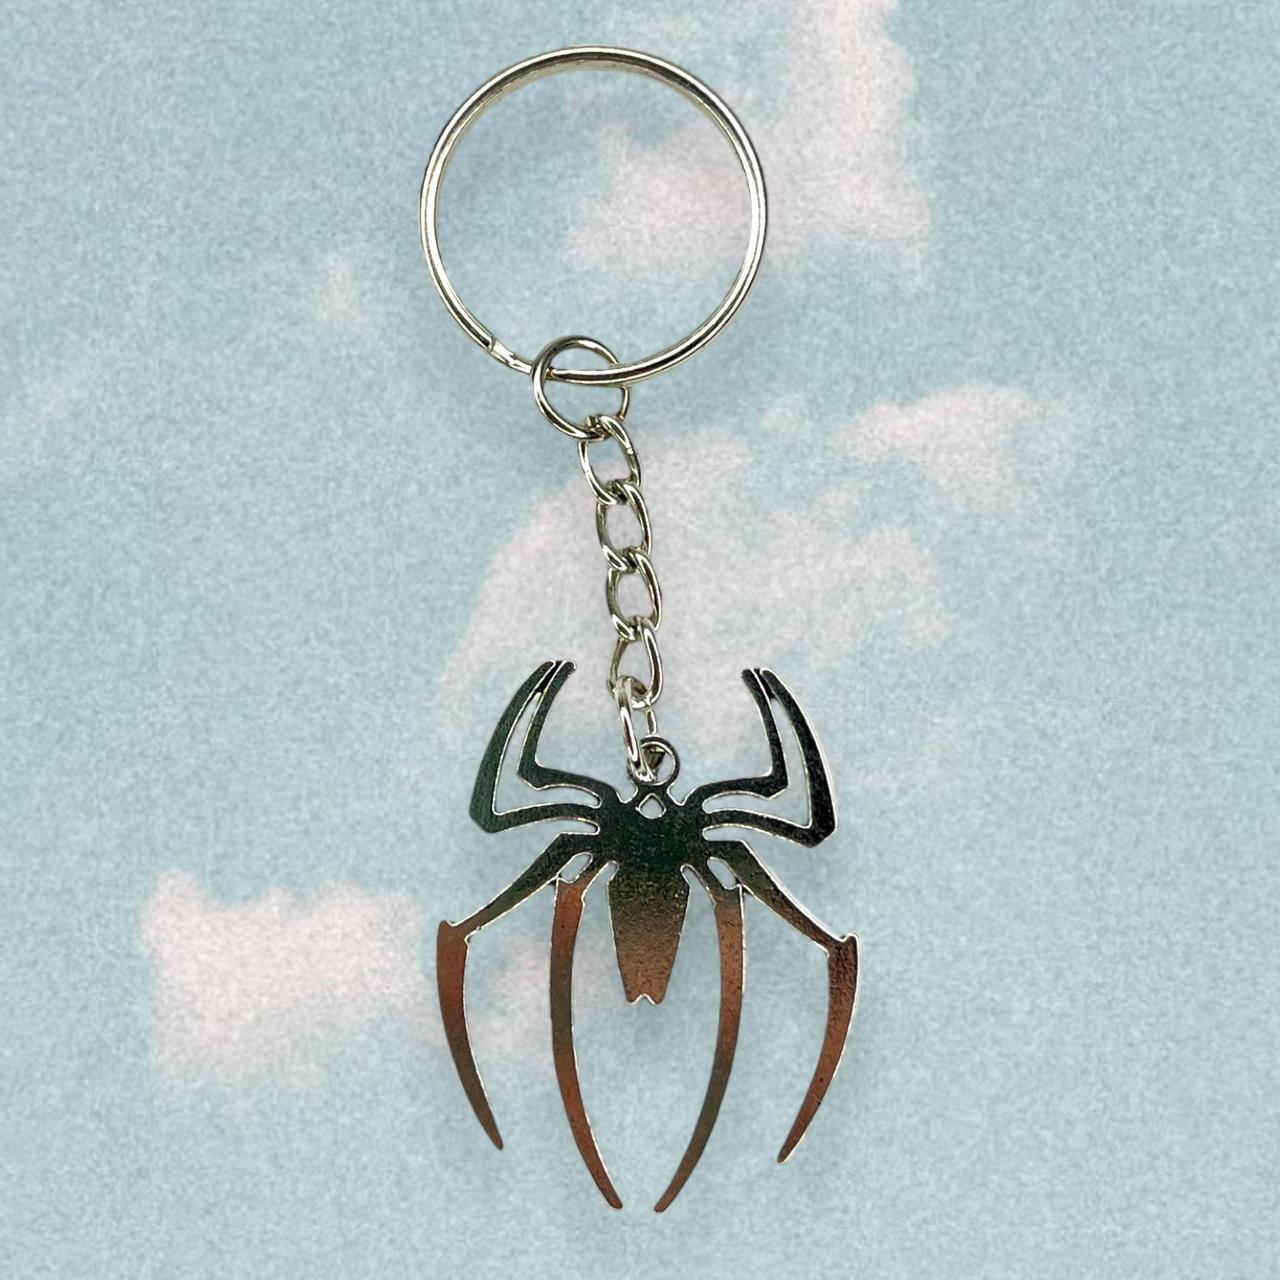 Gothic spider pendant keychain BRAND NEW Size: 8.5... - Depop